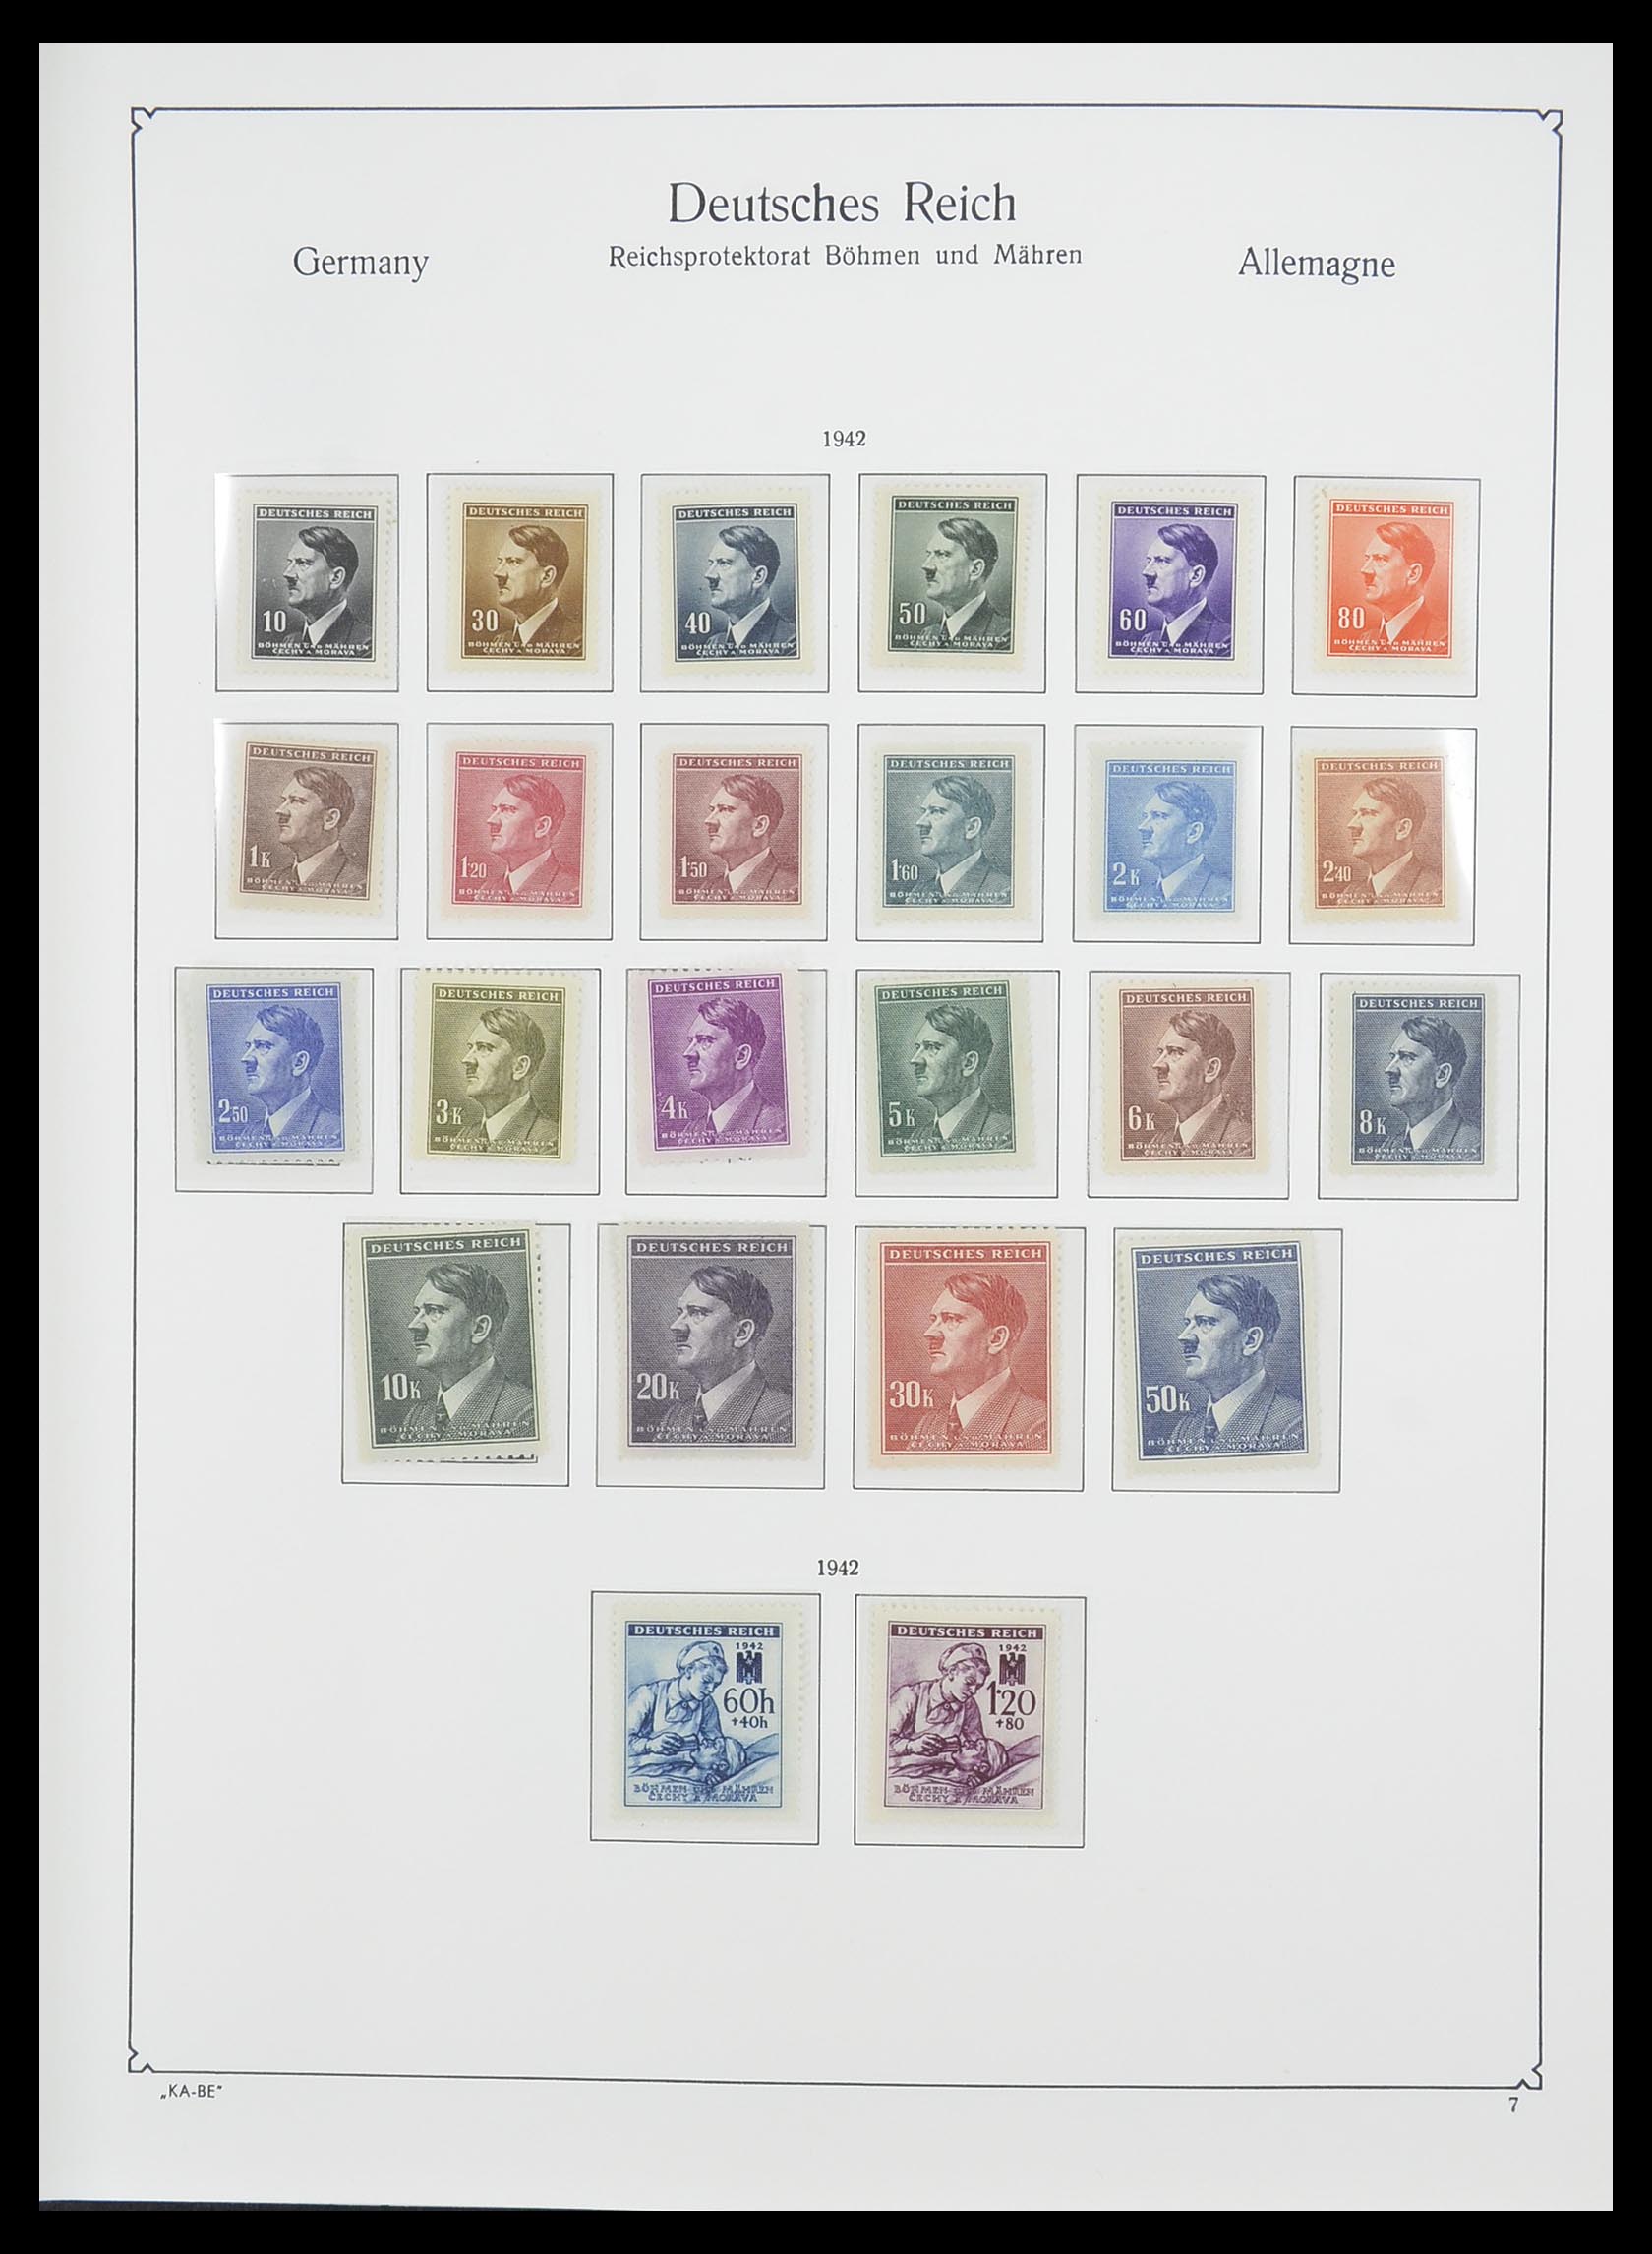 33360 011 - Stamp collection 33360 German occupation 2nd world war 1939-1945.